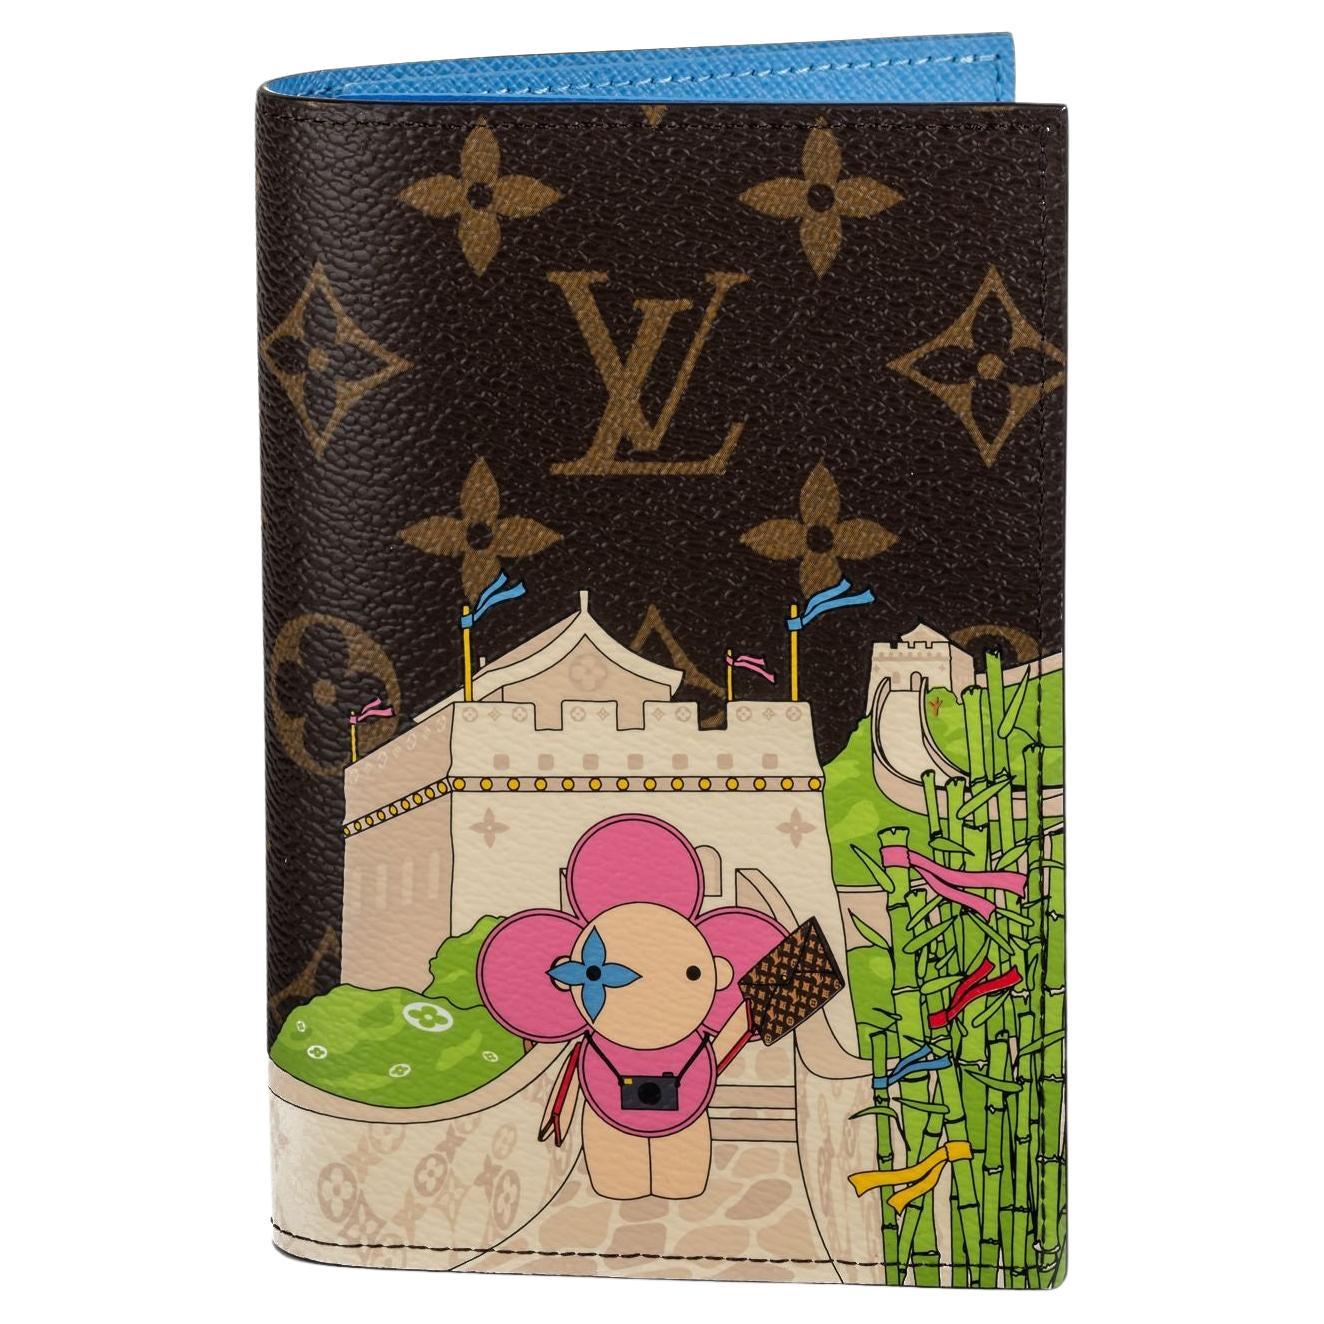 Vuitton Passport - 5 For Sale on 1stDibs